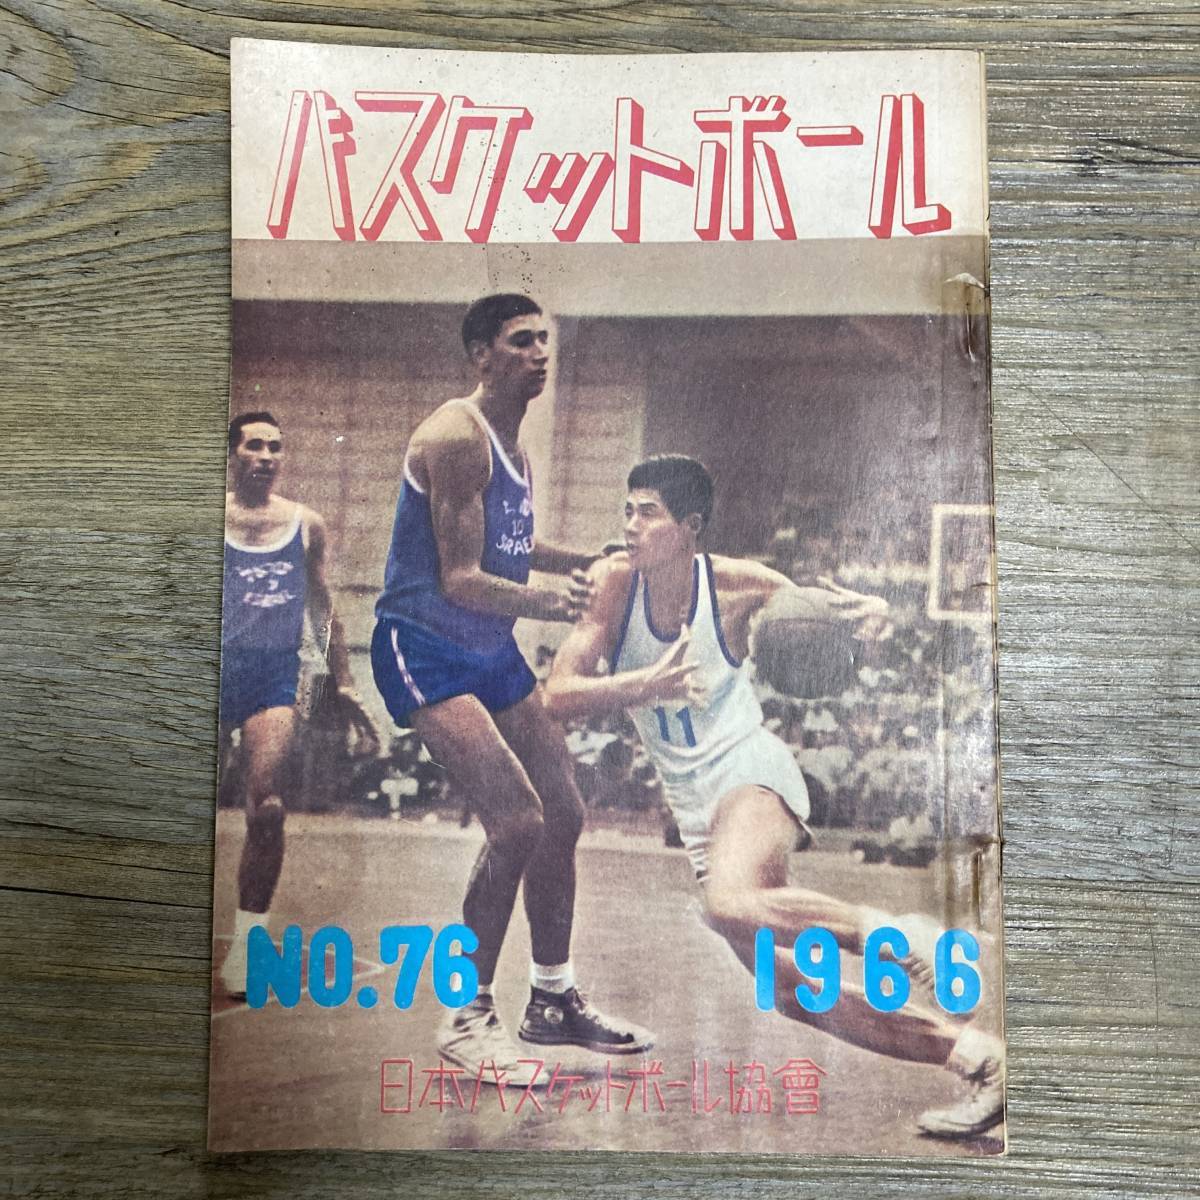 S-3058# баскетбол No.76 1966 год 3 месяц 10 день выпуск # Азия состязание собрание соревнование результат оценка # Япония баскетбол ассоциация # баскетбол информация журнал 